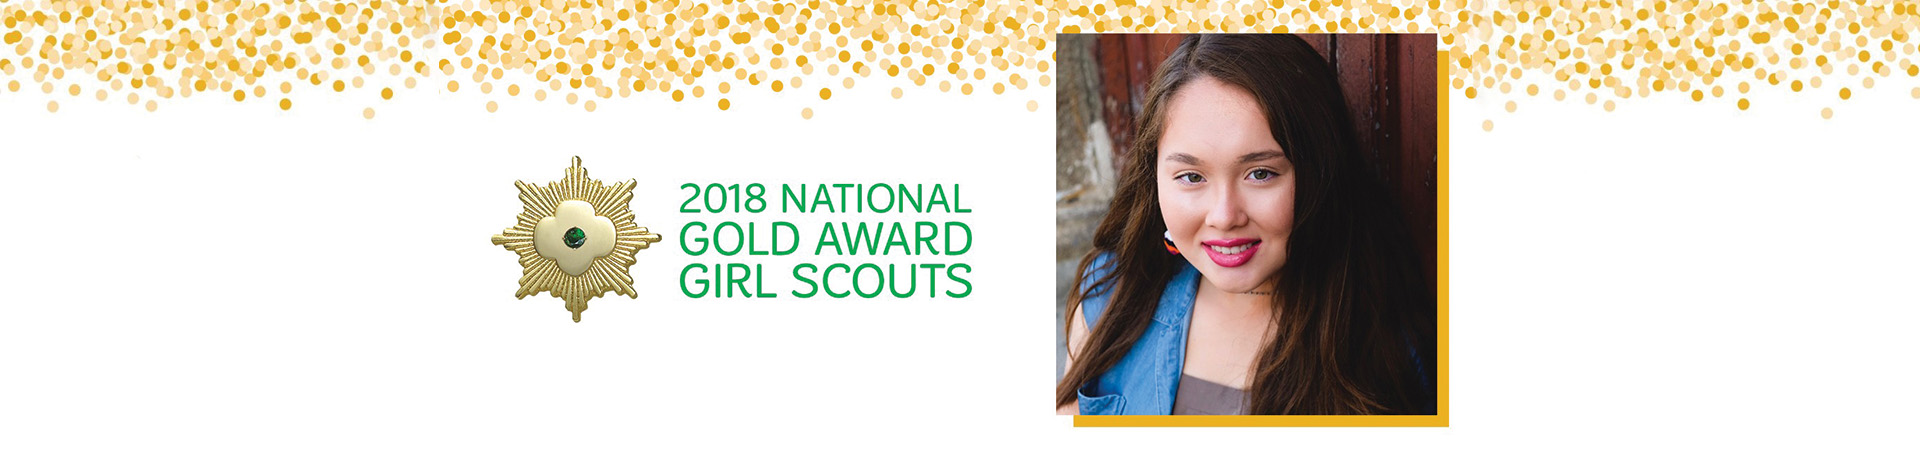  National Gold Award Girl Scout Susan 